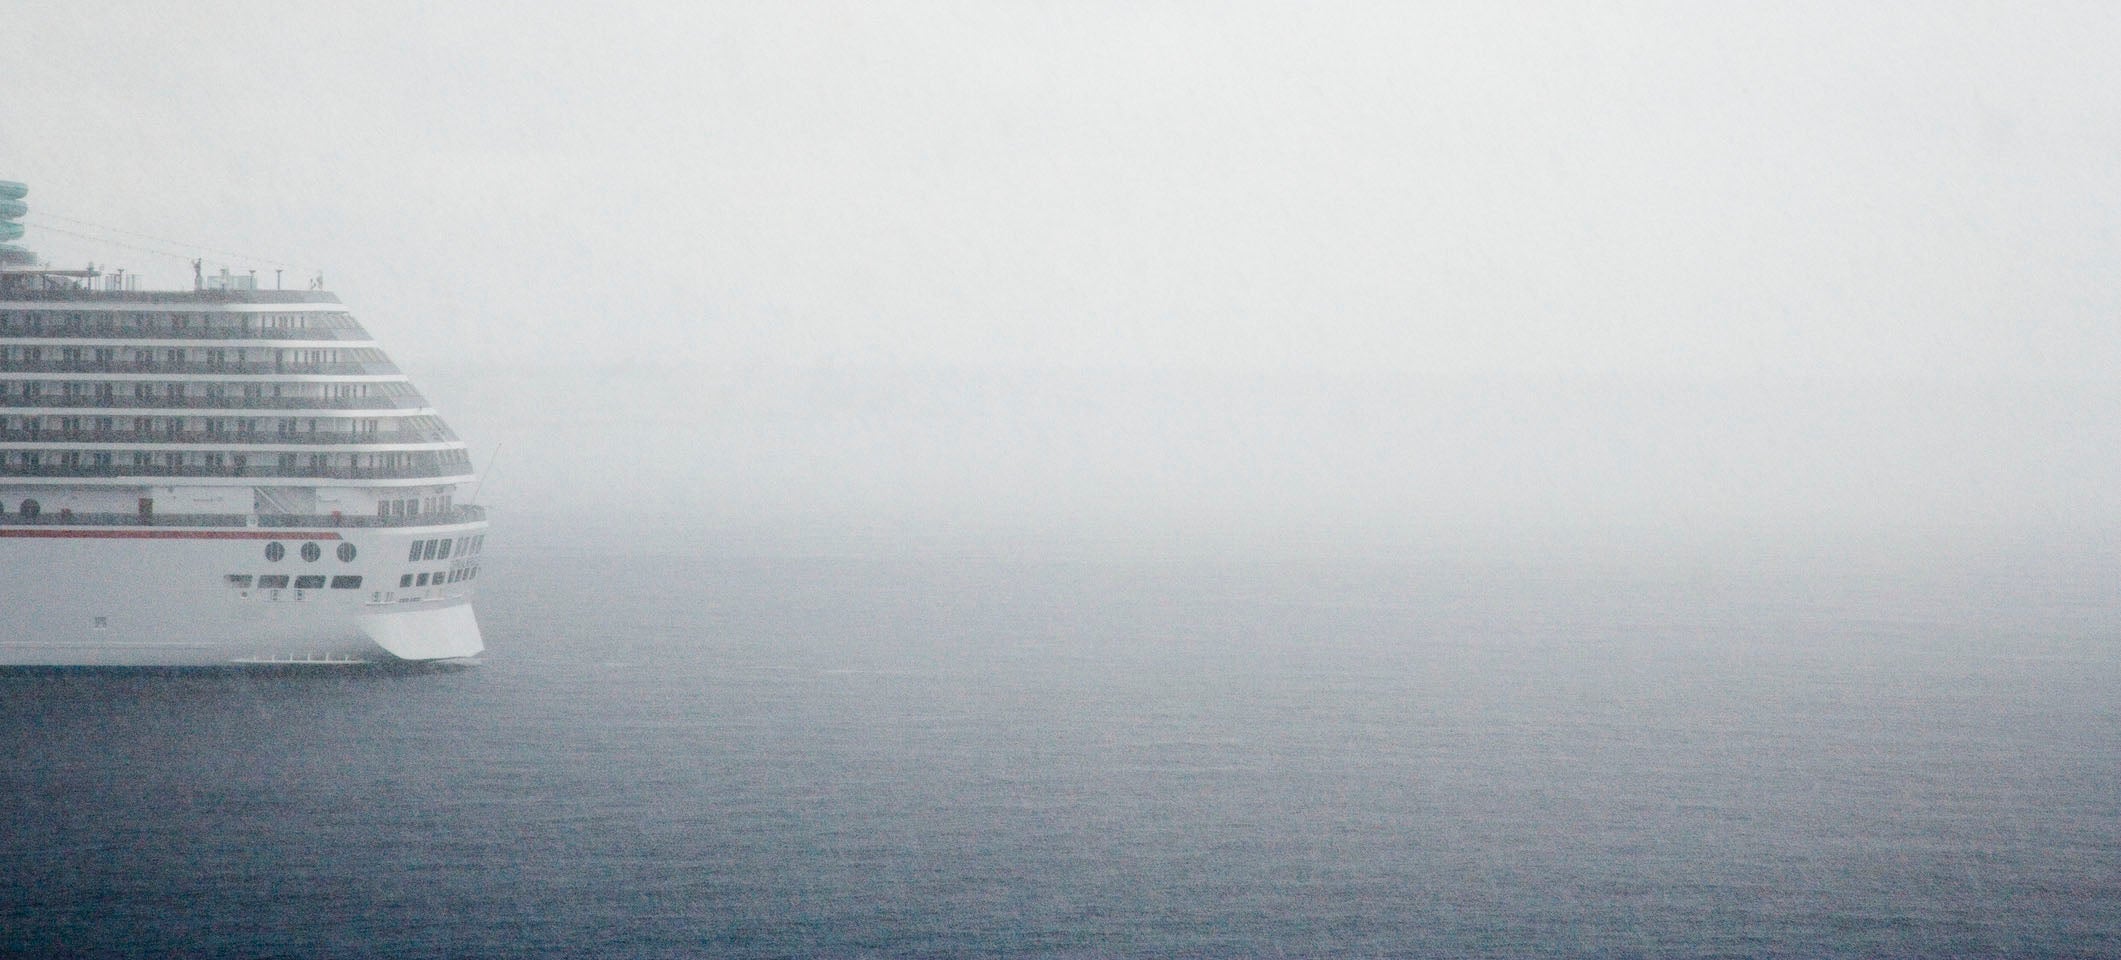 cruise ship fog